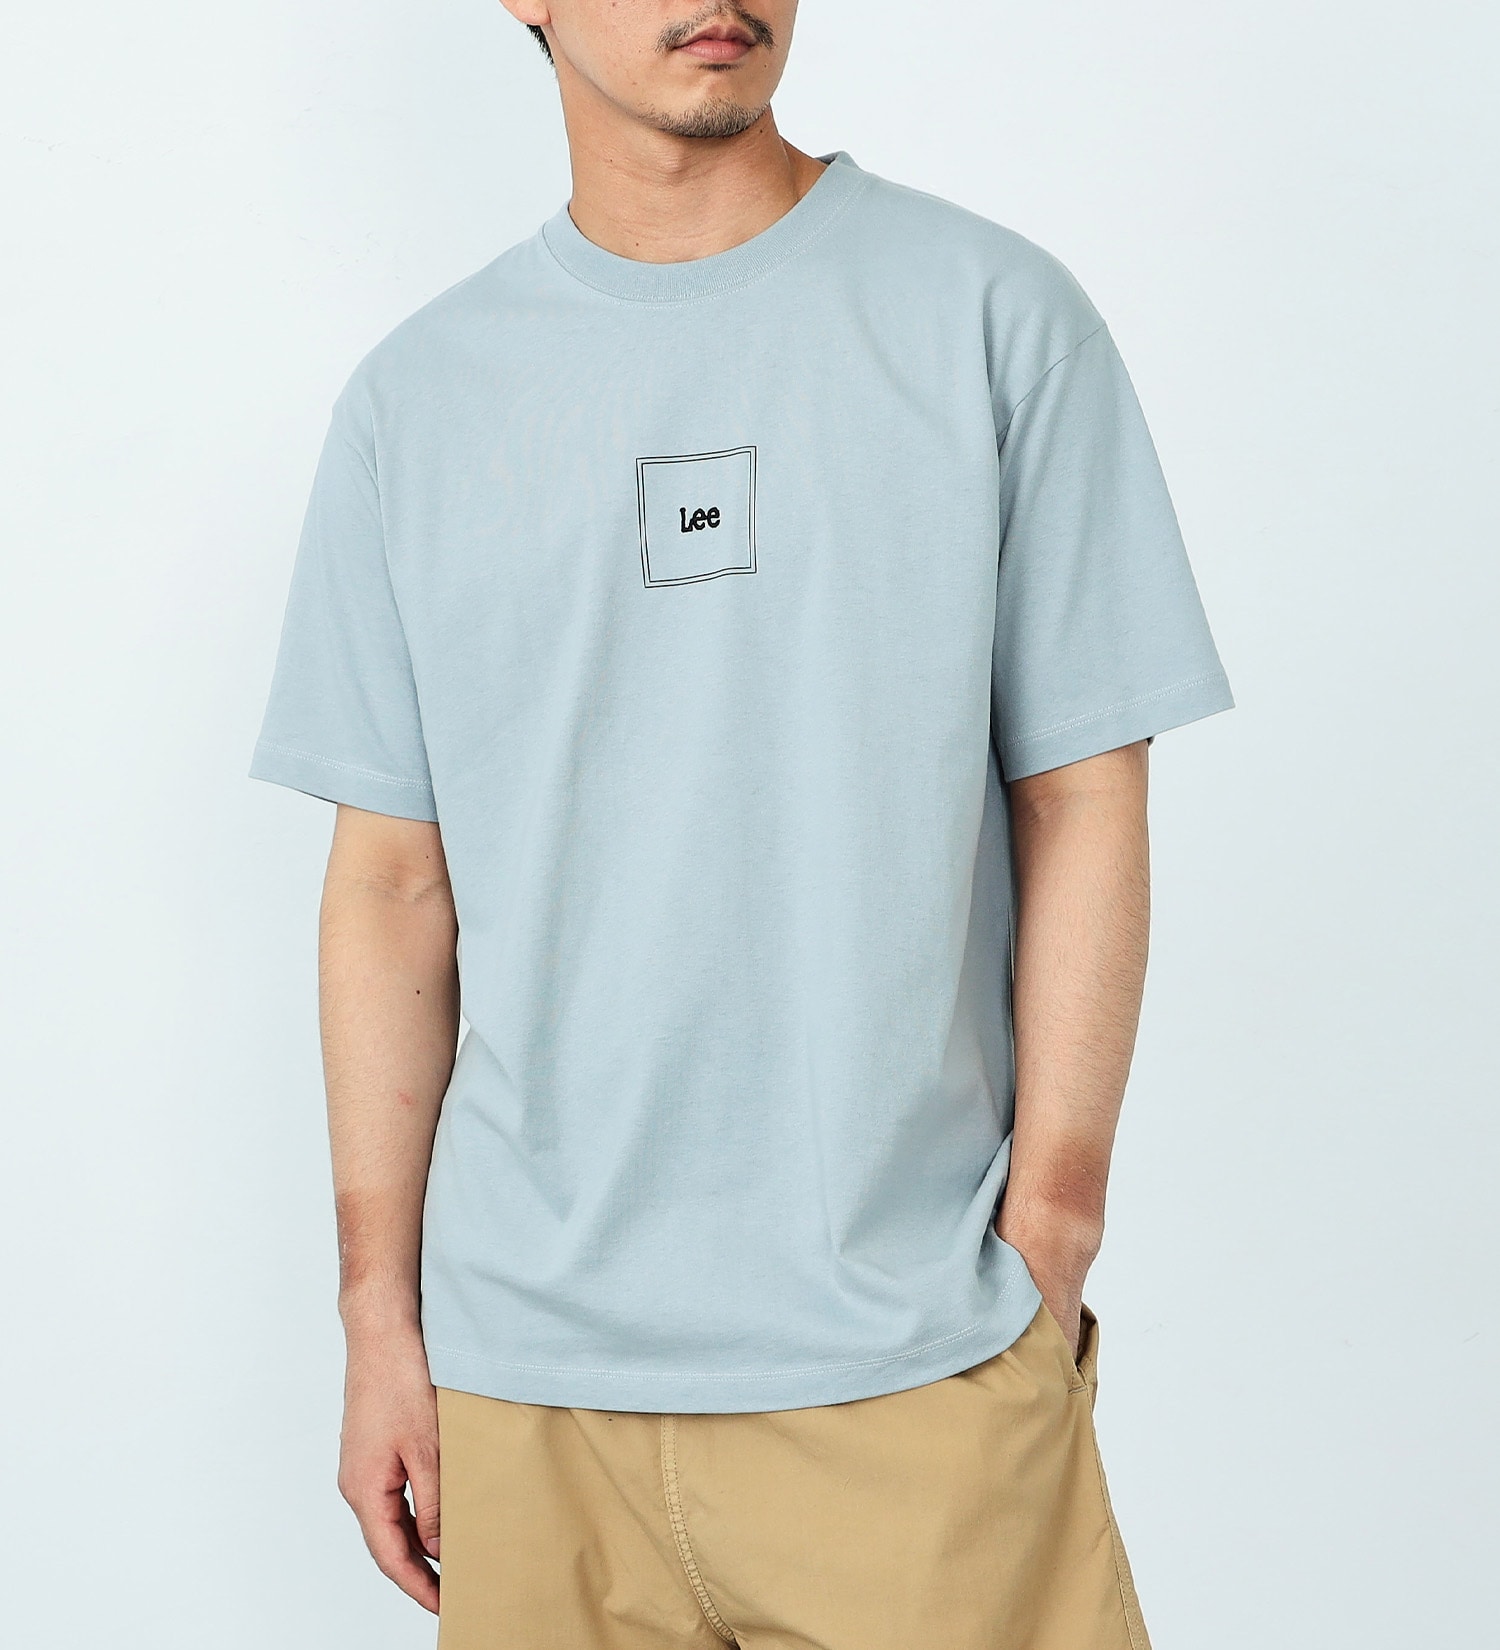 スクエアロゴ半袖Tシャツ【アウトレット店舗・WEB限定】|Lee|リー